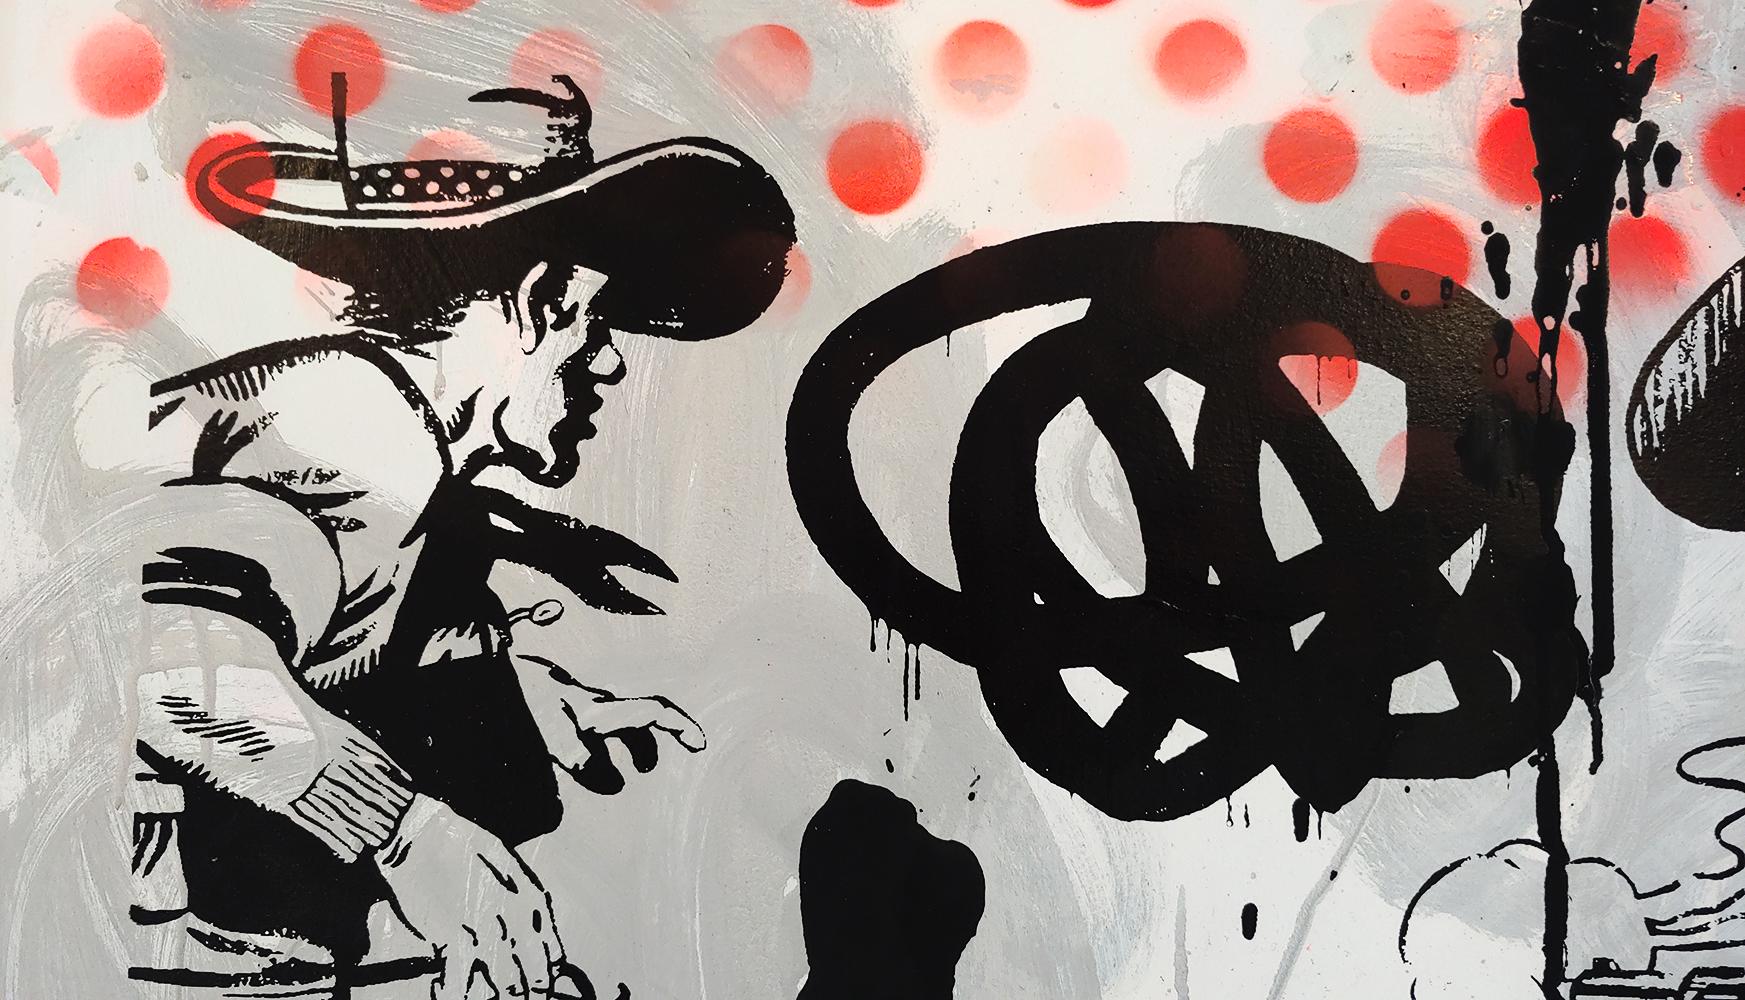 Wir freuen uns, Ihnen mitteilen zu können, dass wir nun exklusiv die Pop Art Cowboy- und Cowgirl-Gemälde des Künstlers Matt Straub vertreten. Wir in der Galerie sind seit mehr als einem Jahrzehnt von den Pop-Western-Gemälden von Straub begeistert